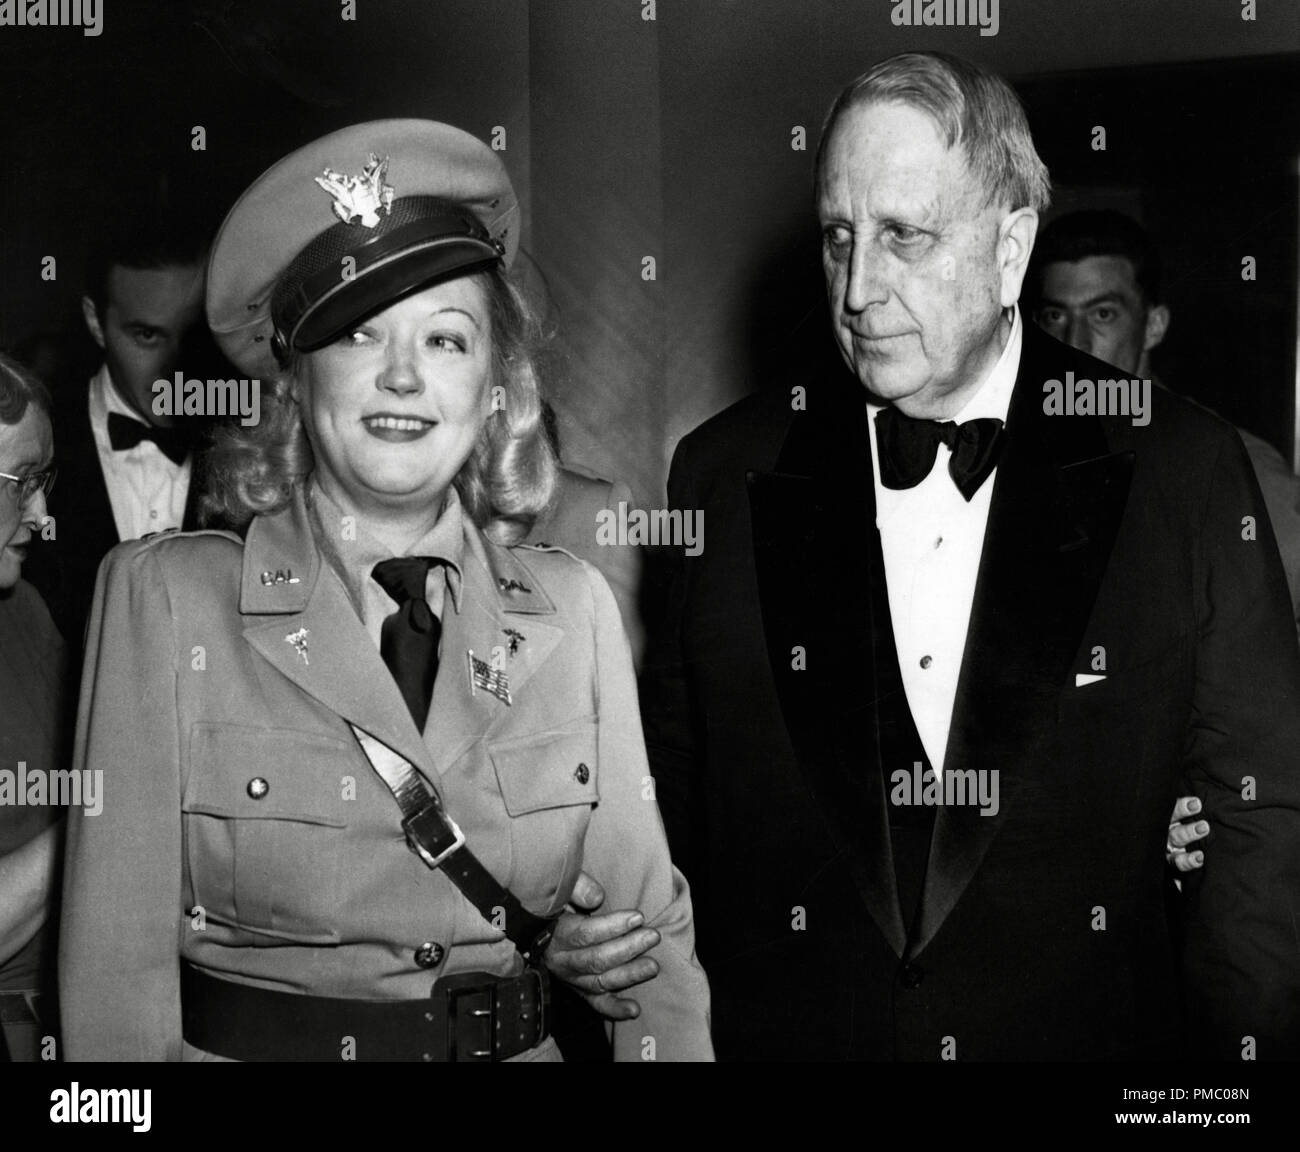 Marion Davies und William Randolph Hearst bei einer ihrer berühmten Kostüm Parteien, circa 1941. Datei Referenz # 33480 906 THA Stockfoto